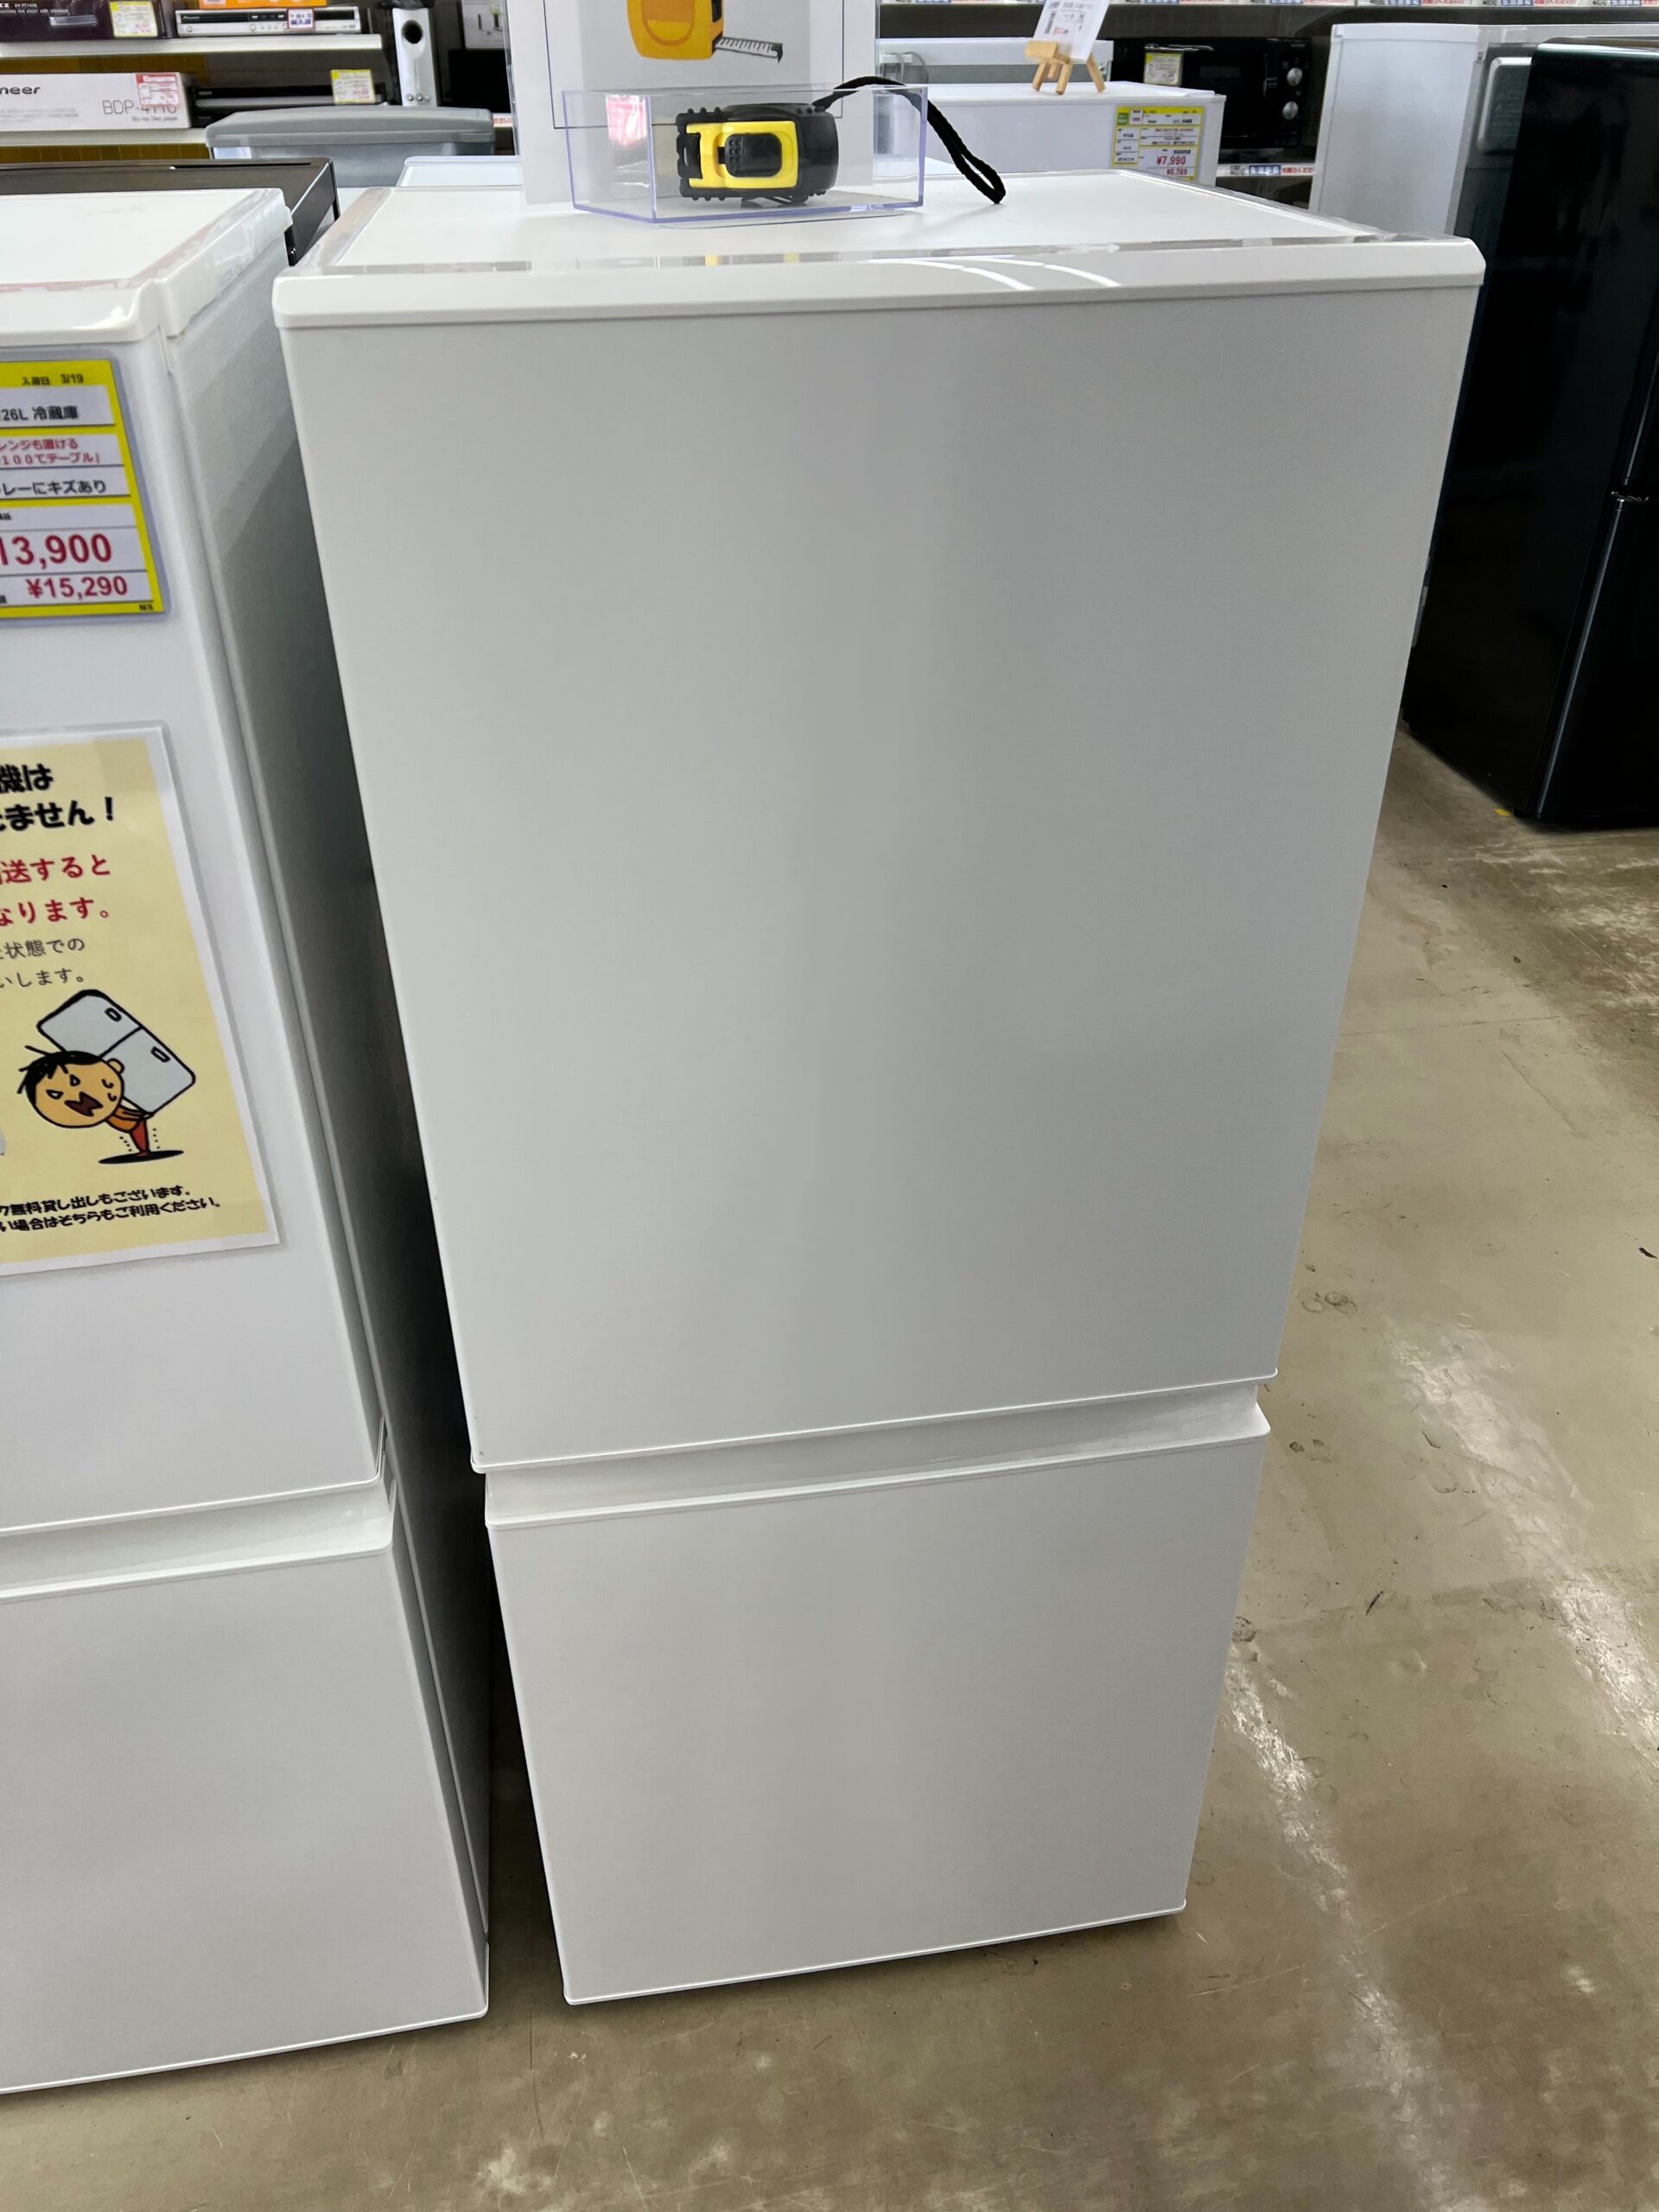 無印良品☆110L冷蔵庫☆2011年式 SMJ-11A - キッチン家電